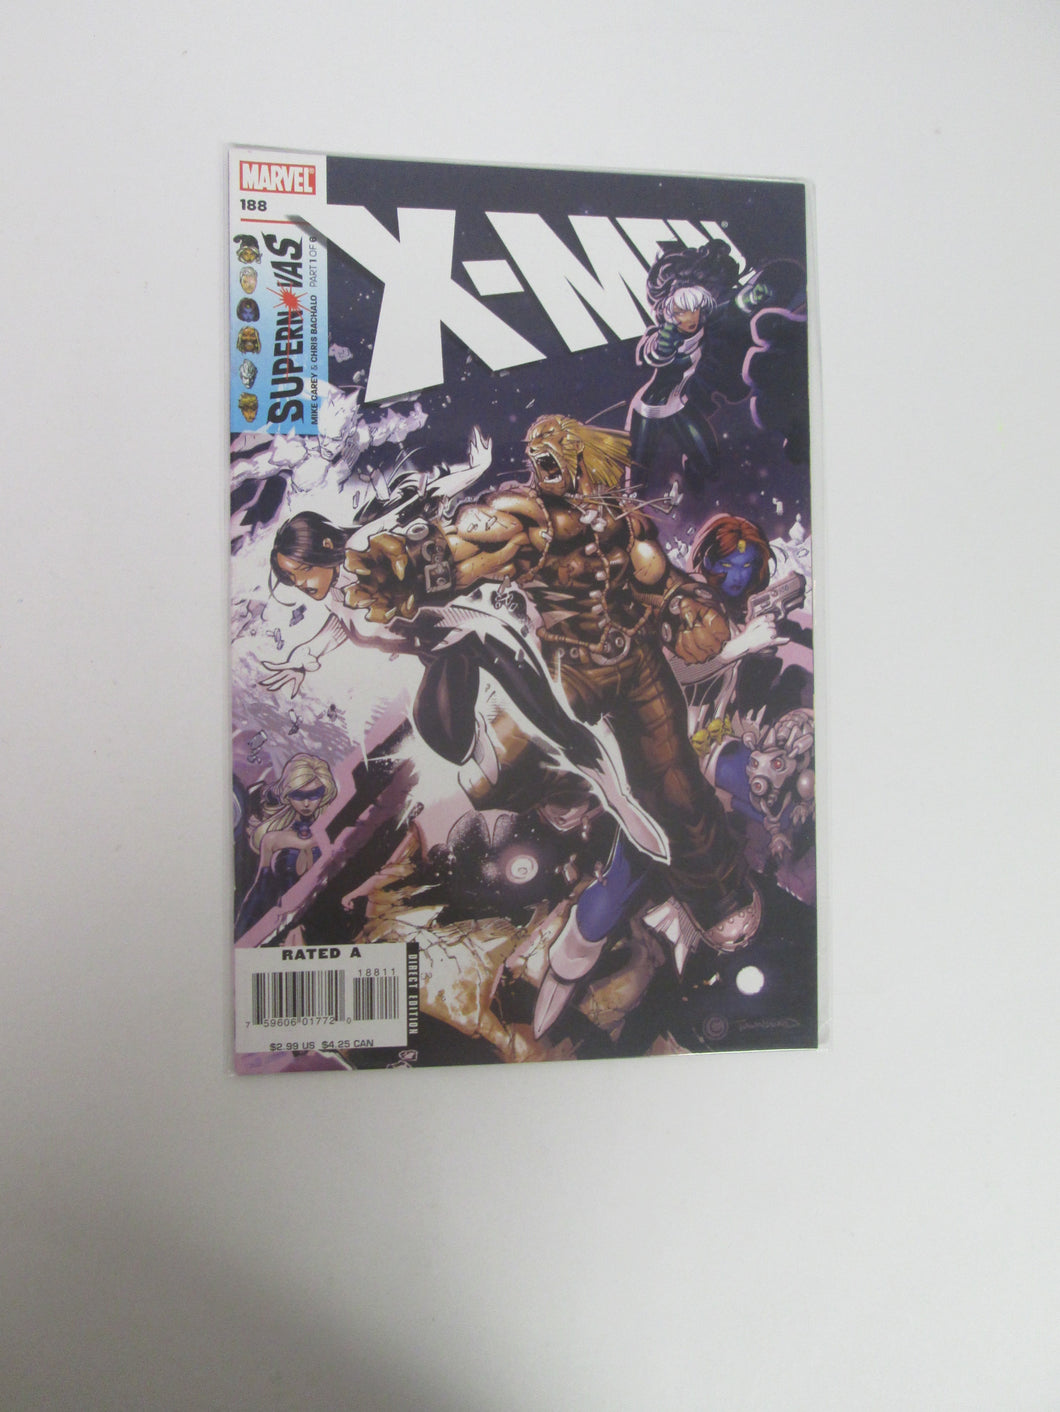 X-Men #188 (Marvel)